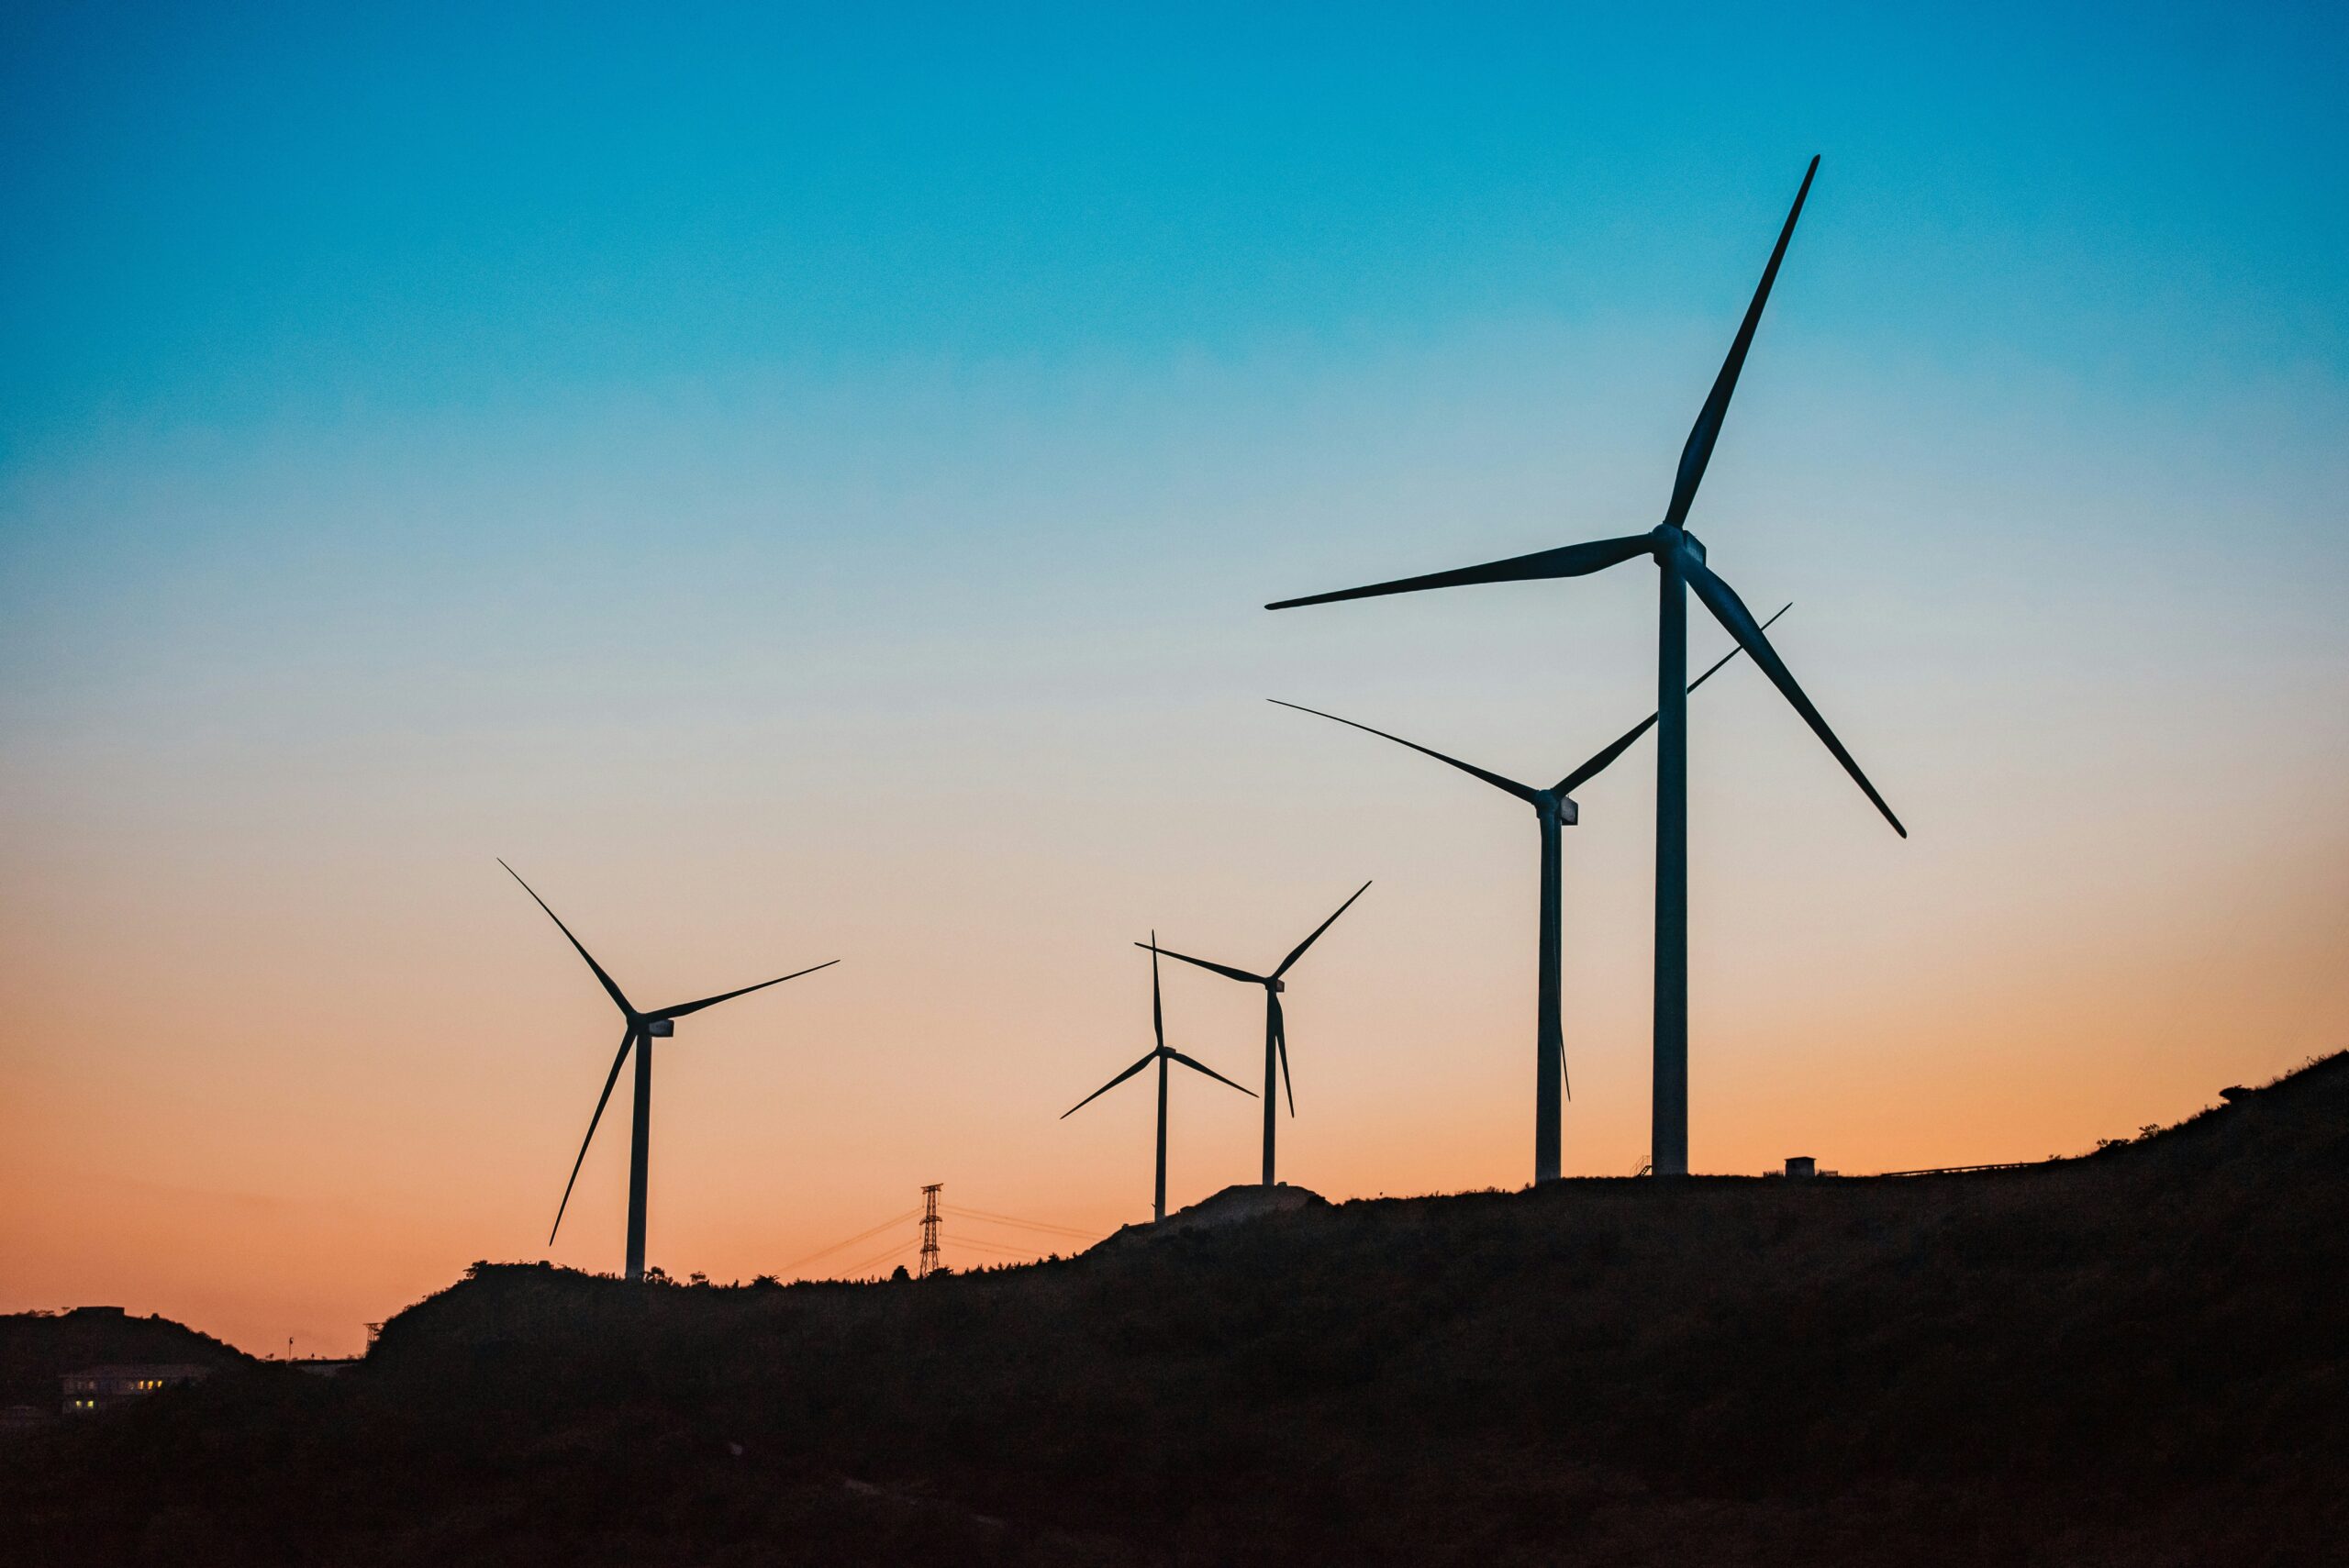 découvrez les éoliennes et leur fonctionnement, ainsi que leur impact sur l'environnement et la production d'énergie renouvelable.